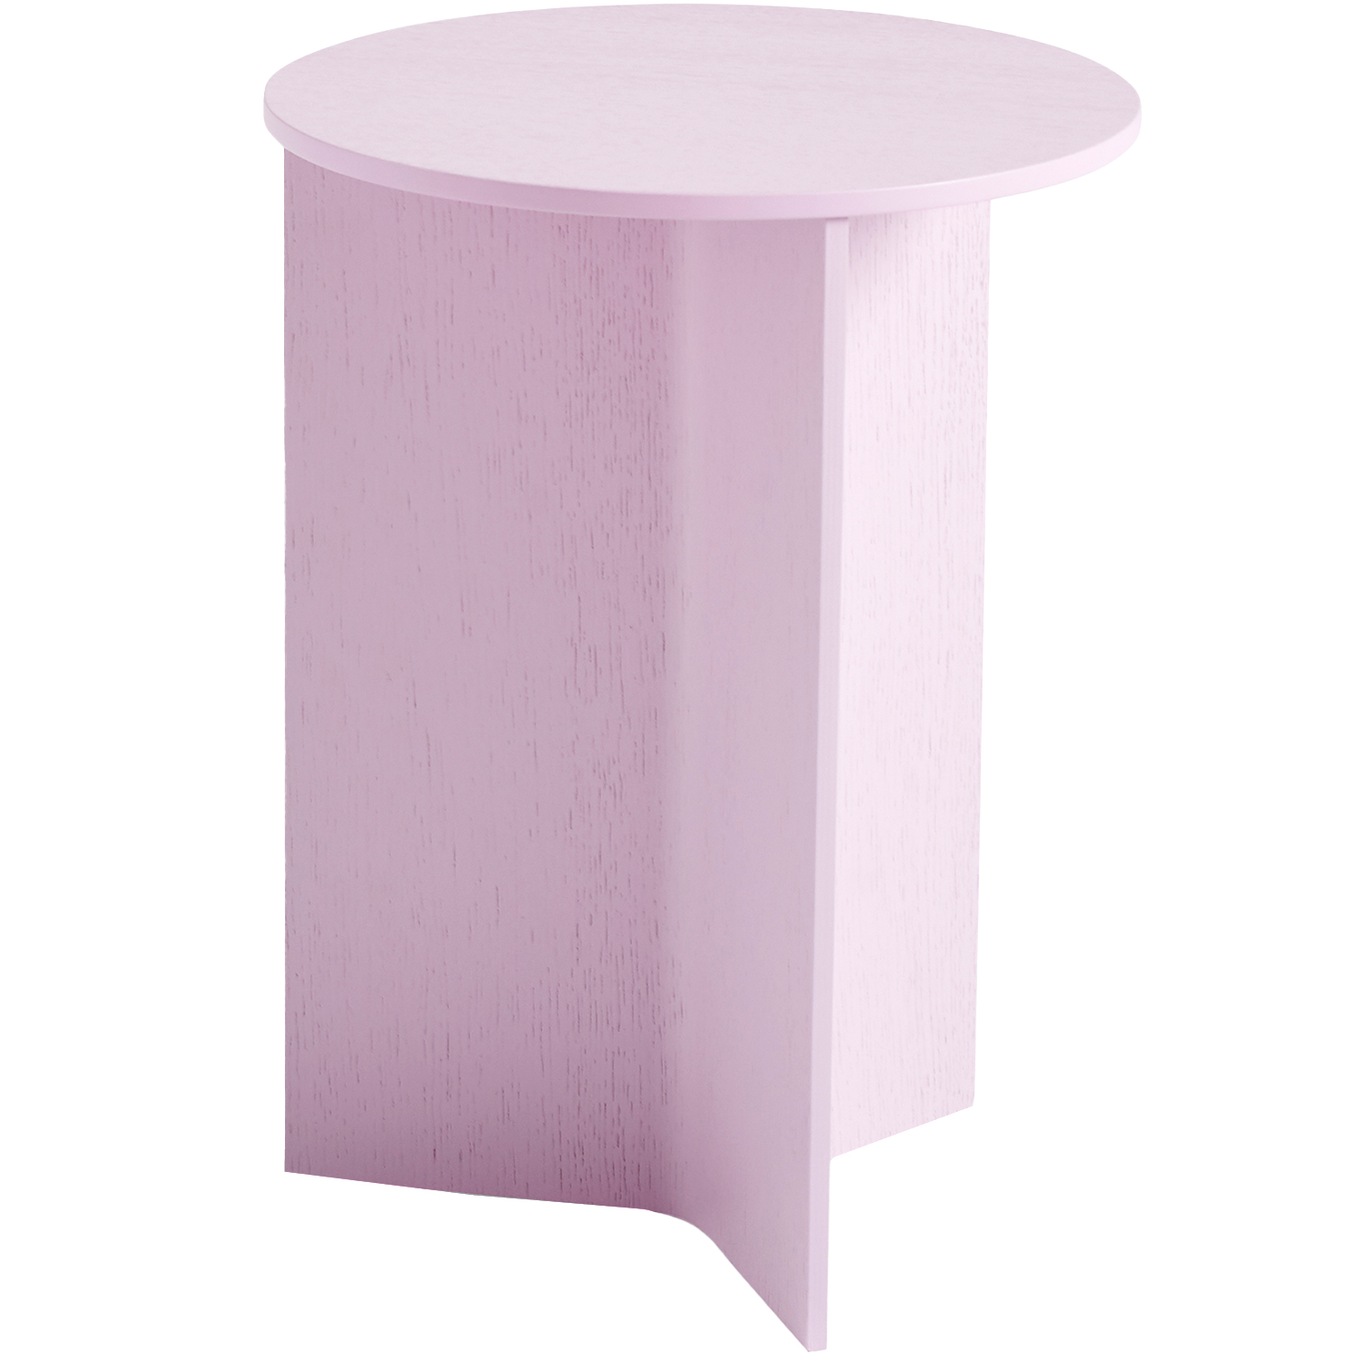 Slit Pöytä Ø35 cm, Pinkki